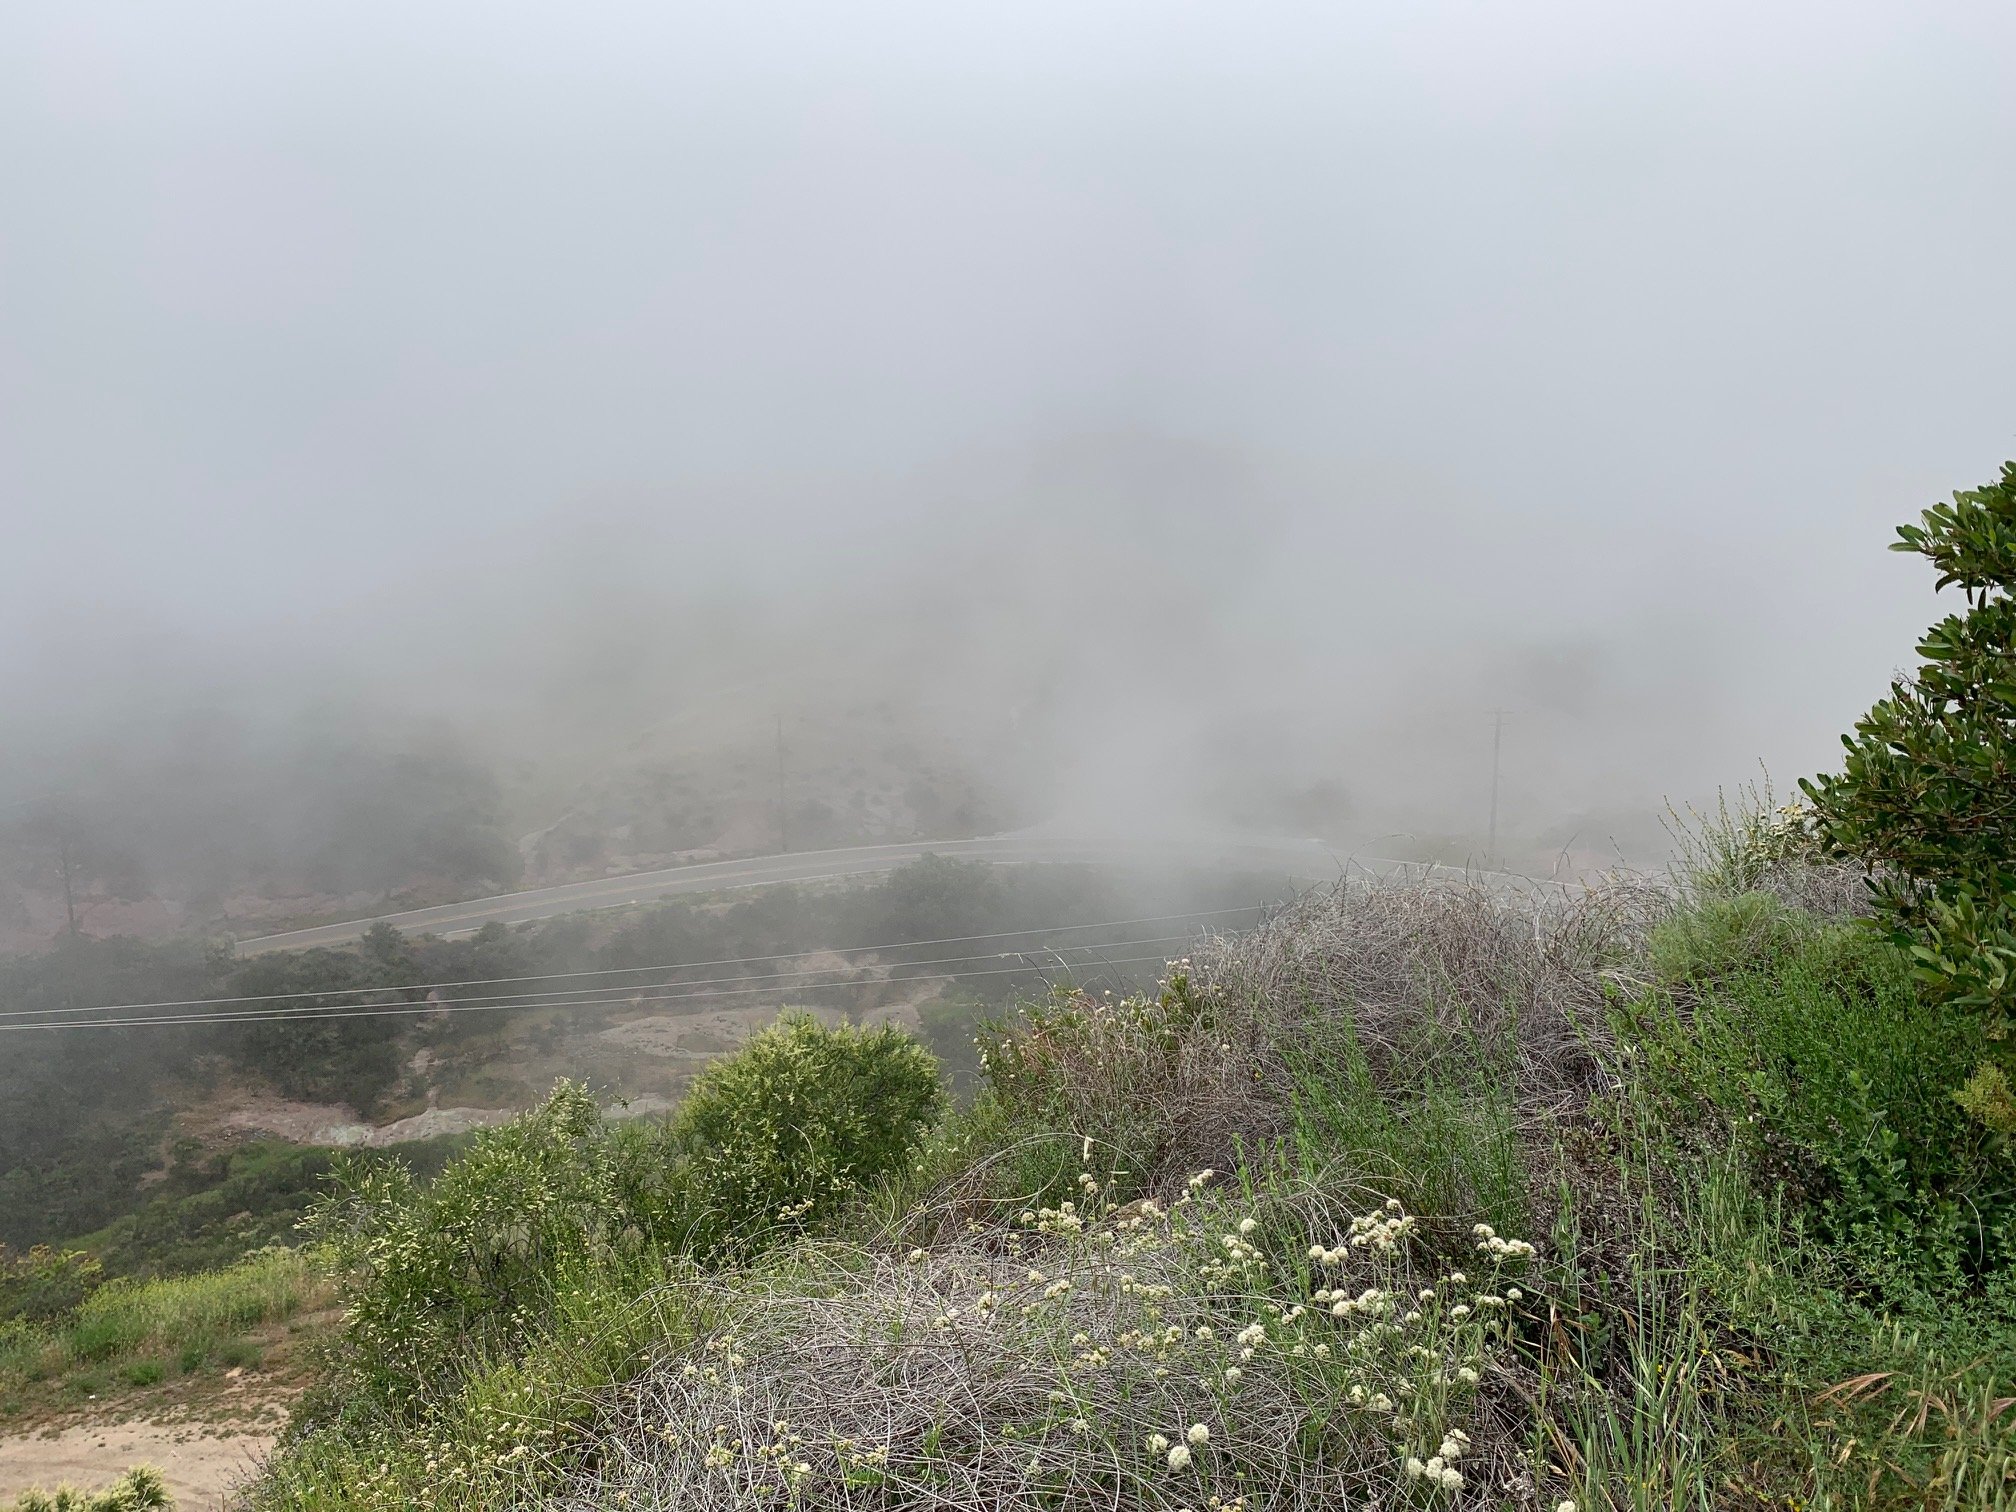 Mist on the mountains